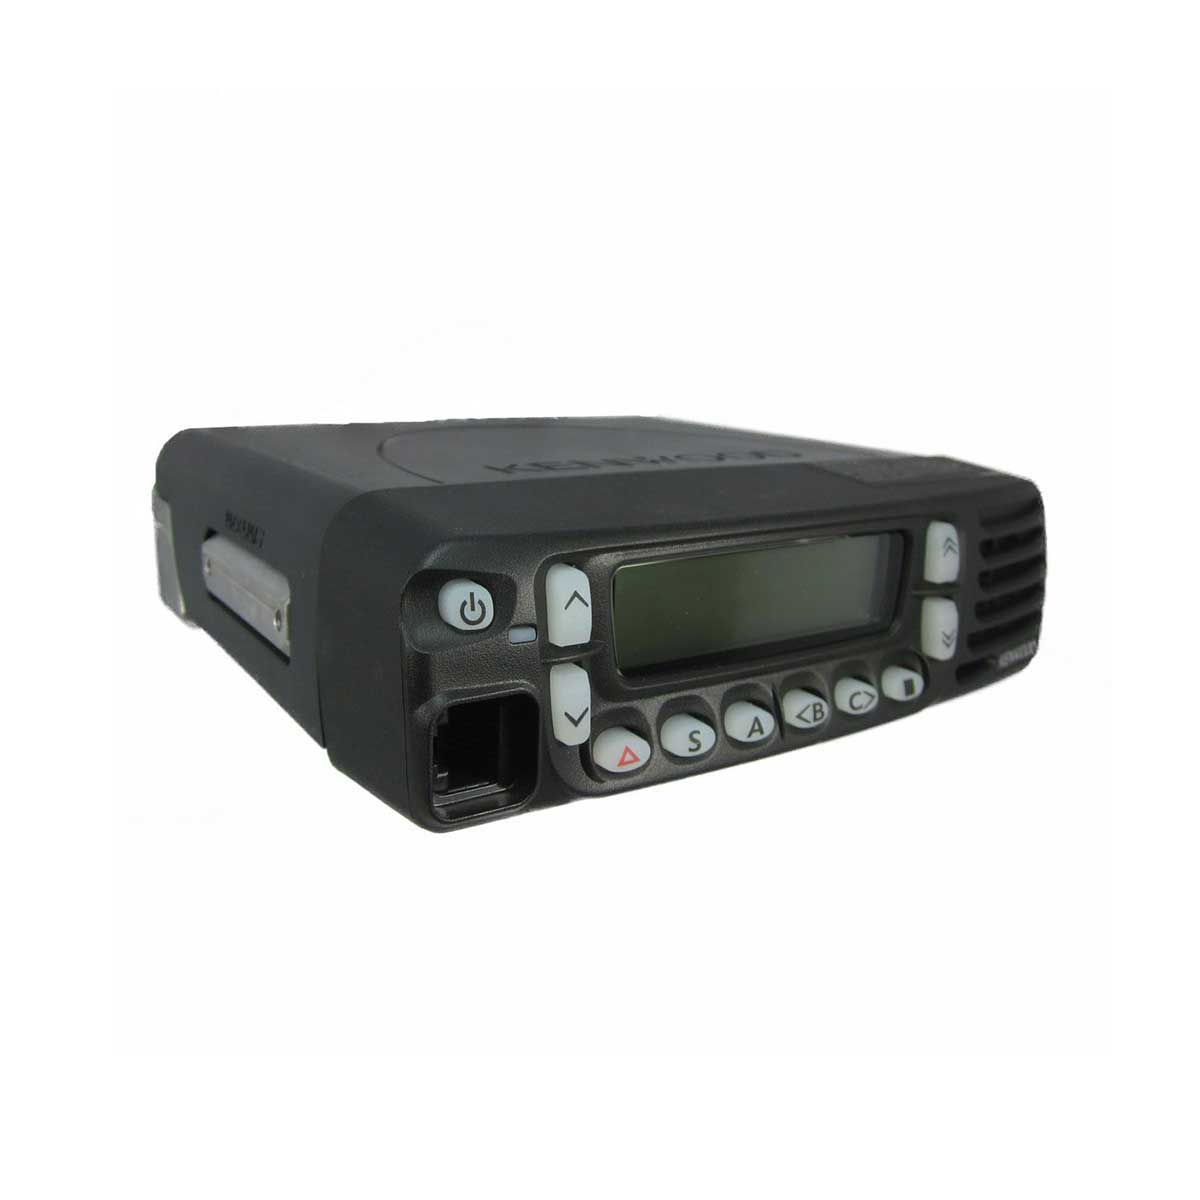 Radio Kenwood TK-8180 Analógico UHF 400-470 MHz